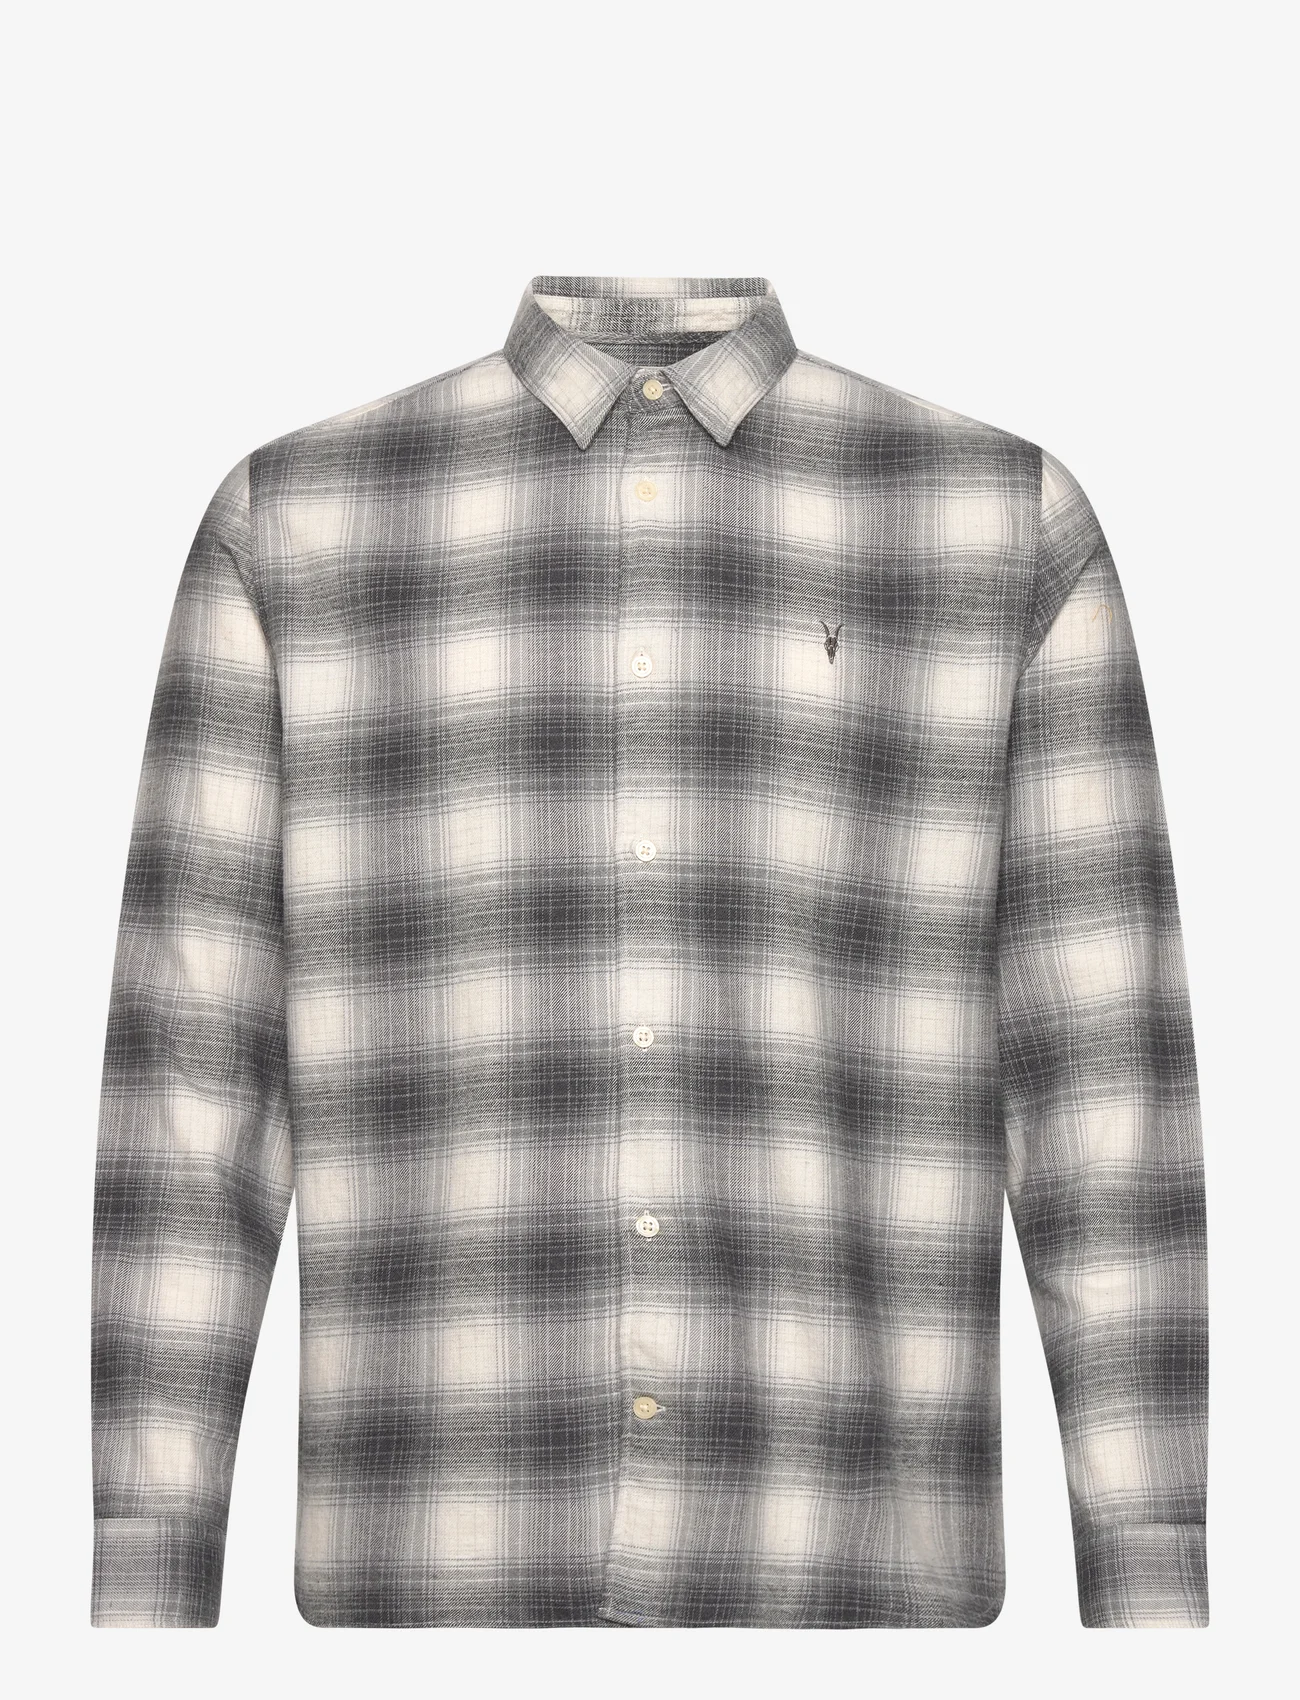 AllSaints - OMEGA LS SHIRT - ternede skjorter - rock grey - 0